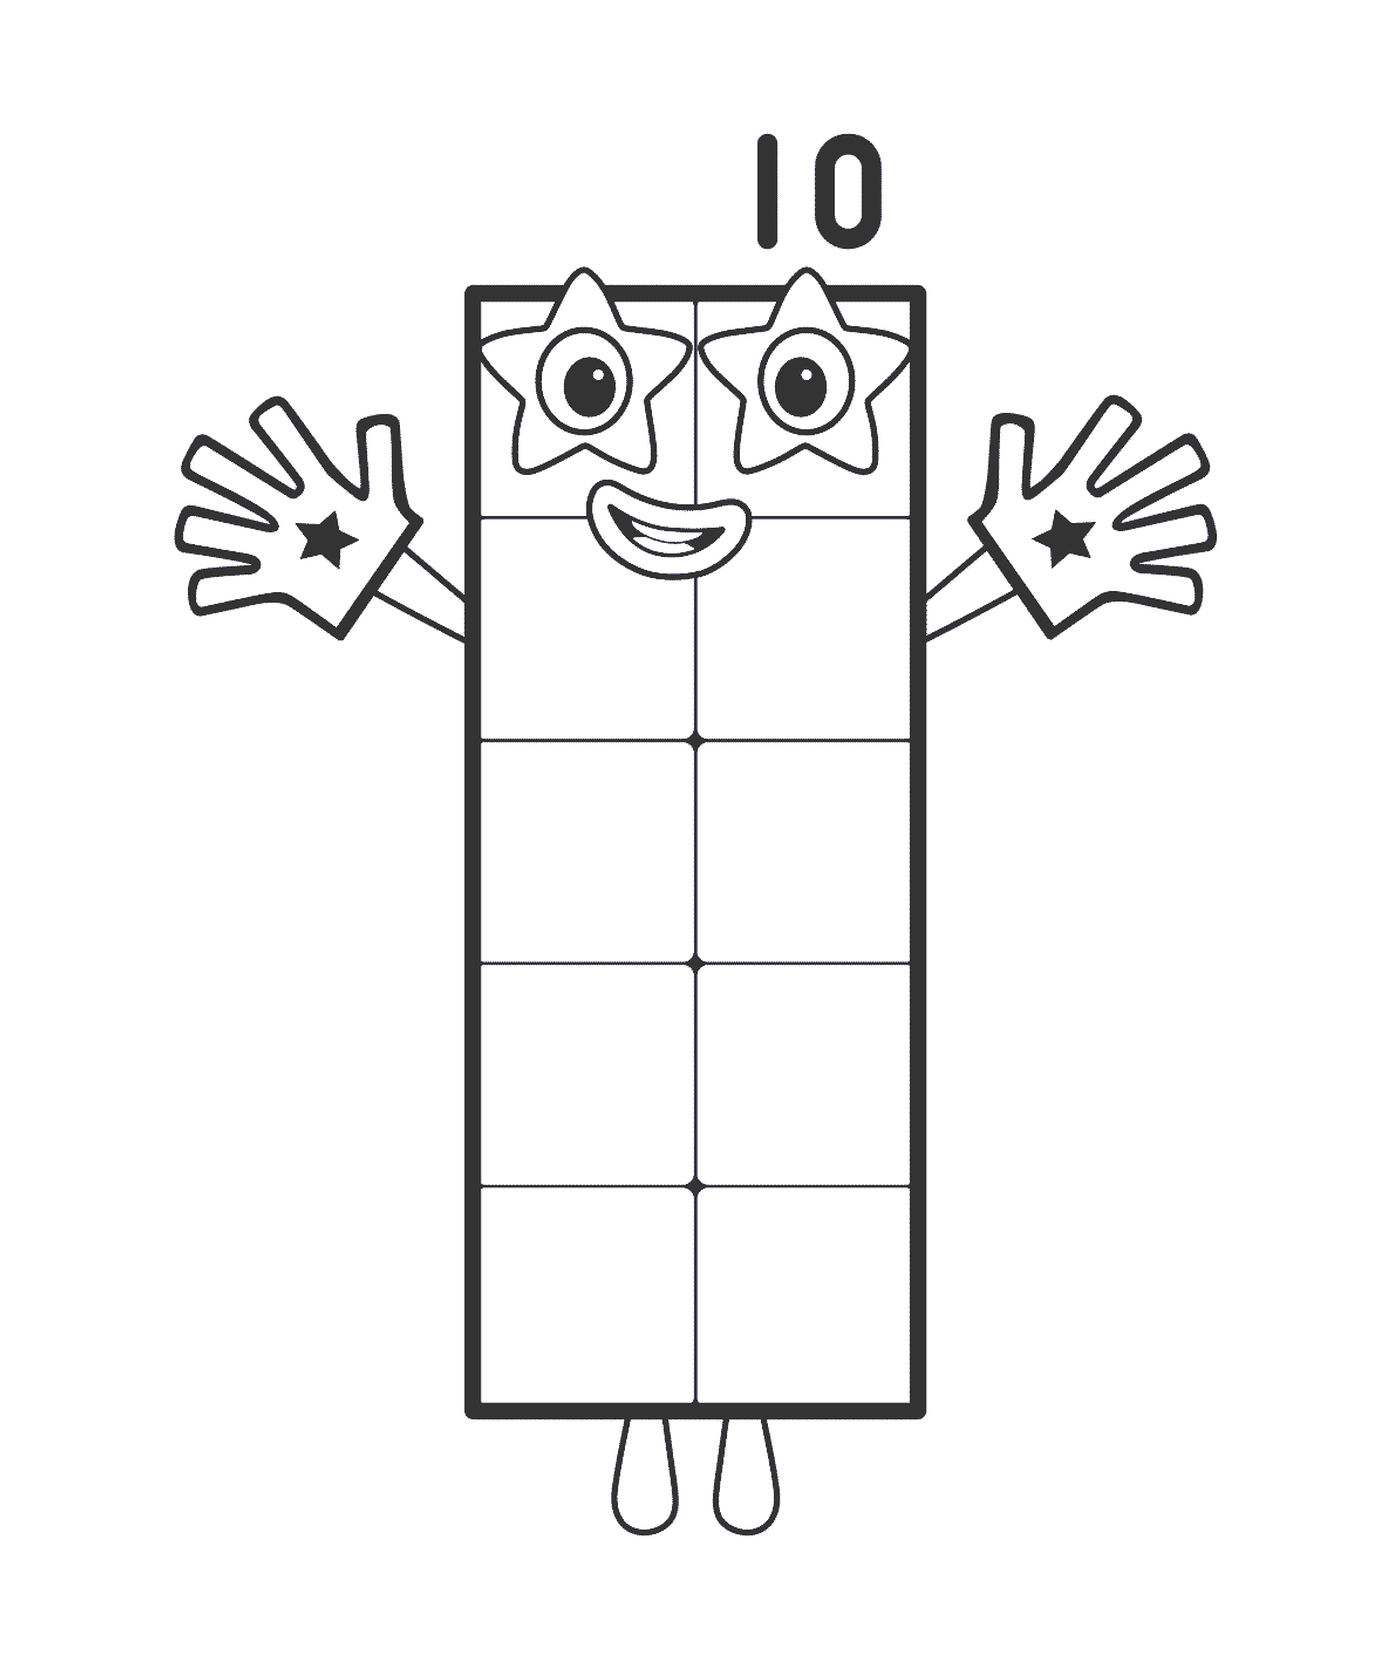  Retângulo Número 10, uma forma retangular 